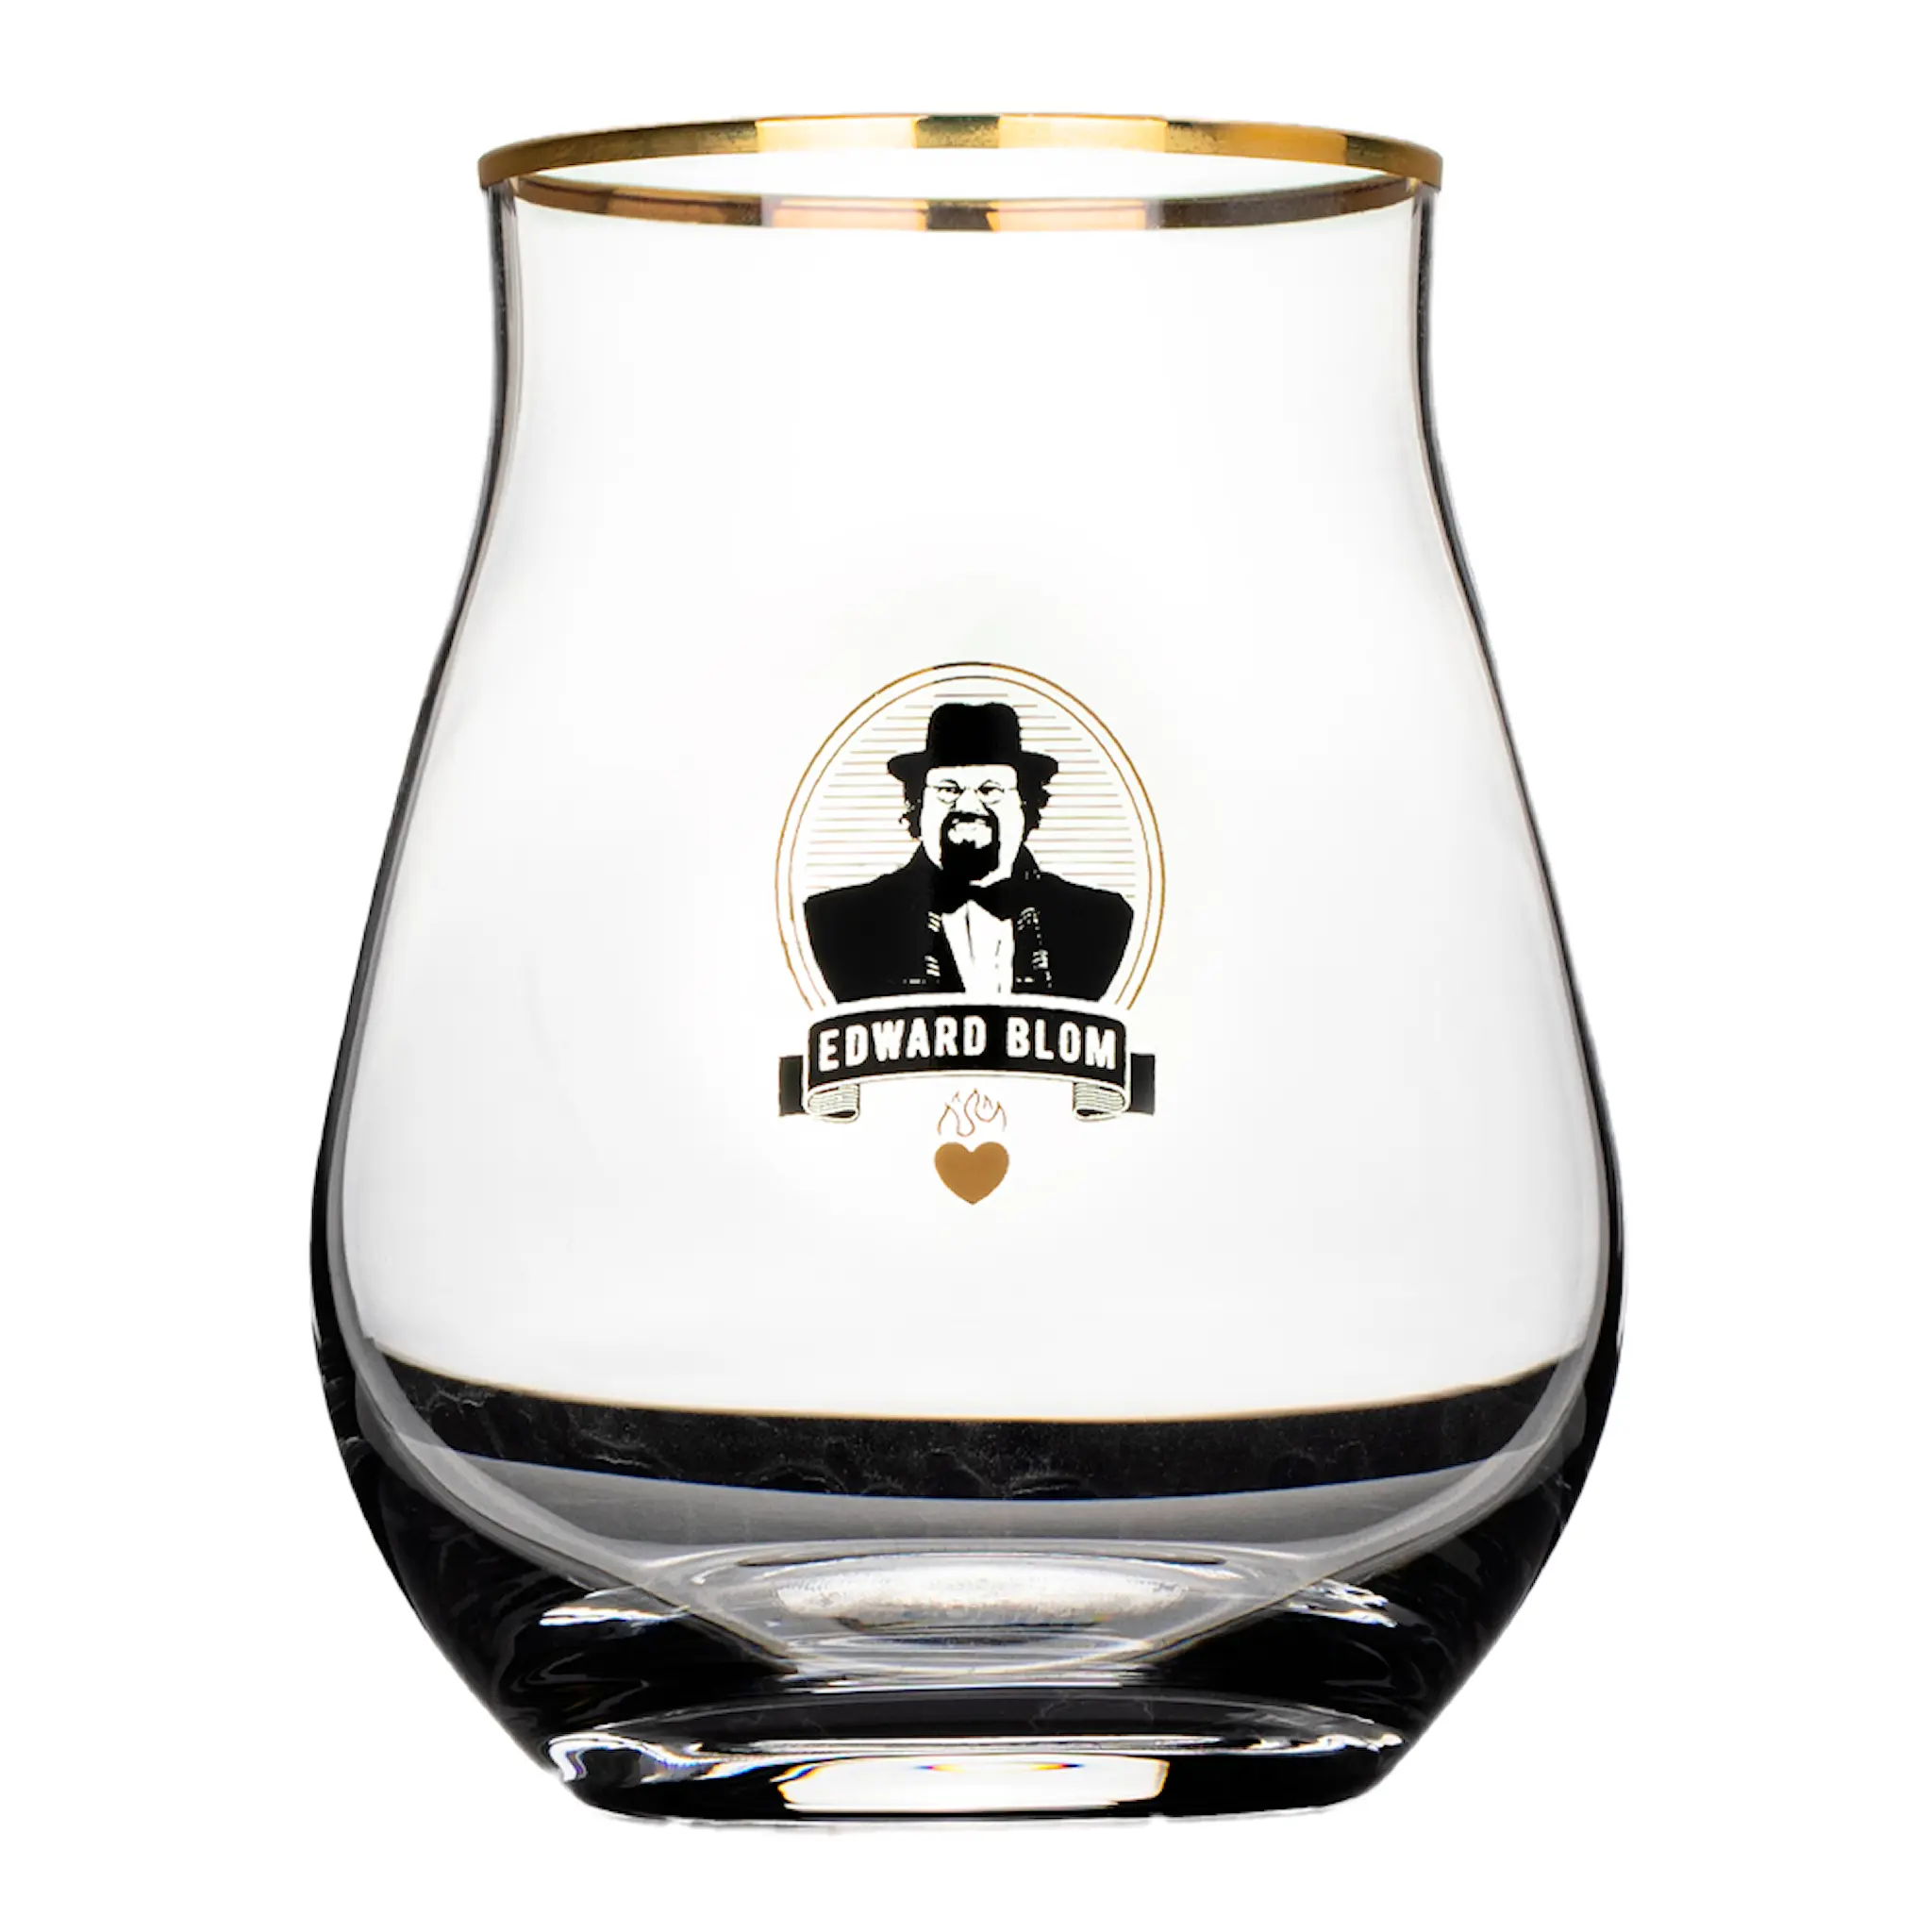 Edward Blom Whiskyglas / Tastingglas 42 cl Det viktiga är